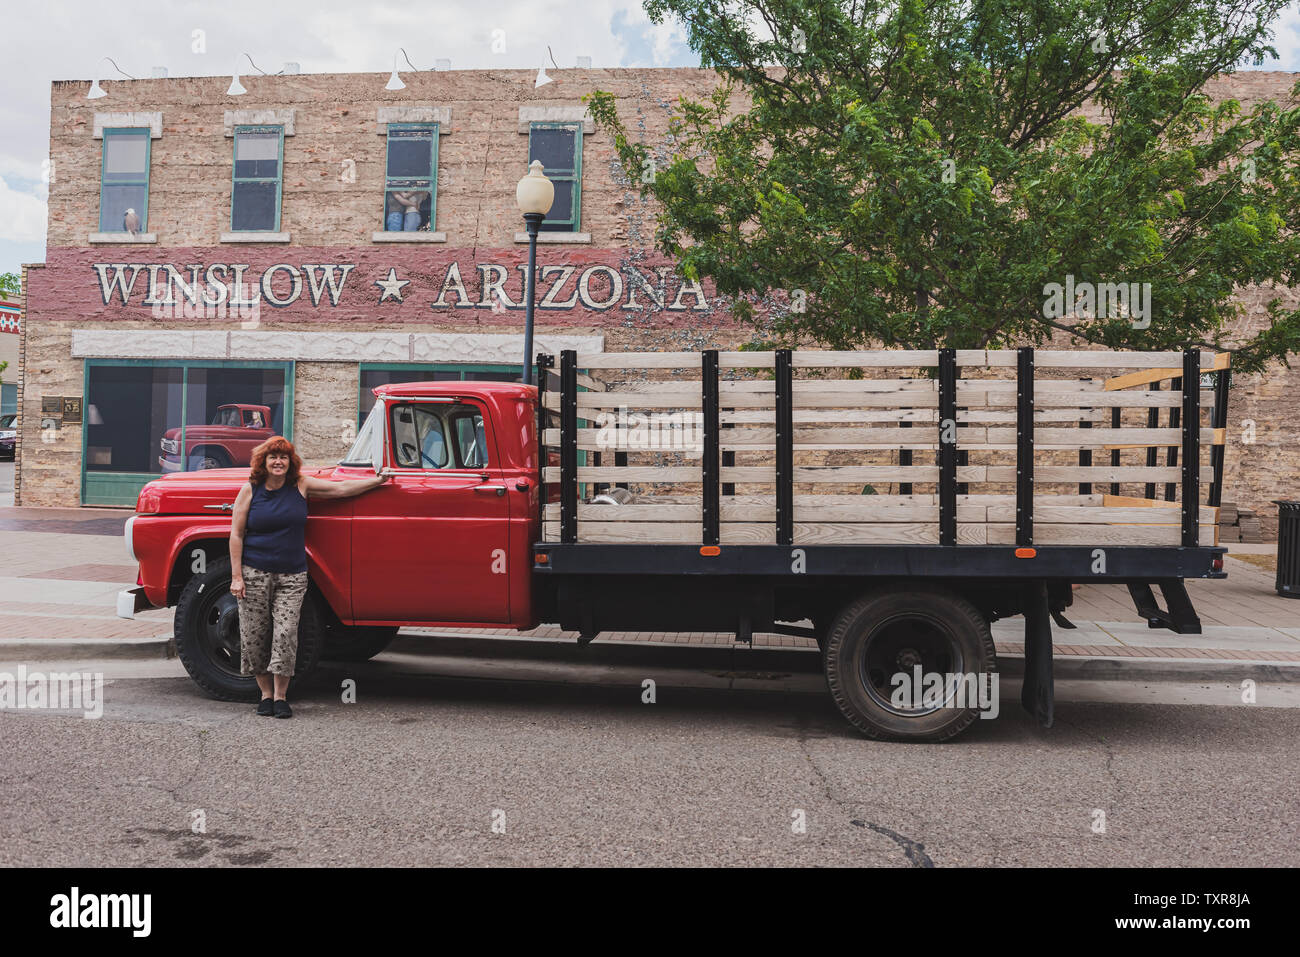 Winslow Arizona, USA 5/16/2016. Flatbed Ford mit Frau. Seite von Gebäude mit Kunst arbeiten, Windows, Menschen umarmen, Adler, Fahrzeug mit Fahrerin. Sig Stockfoto